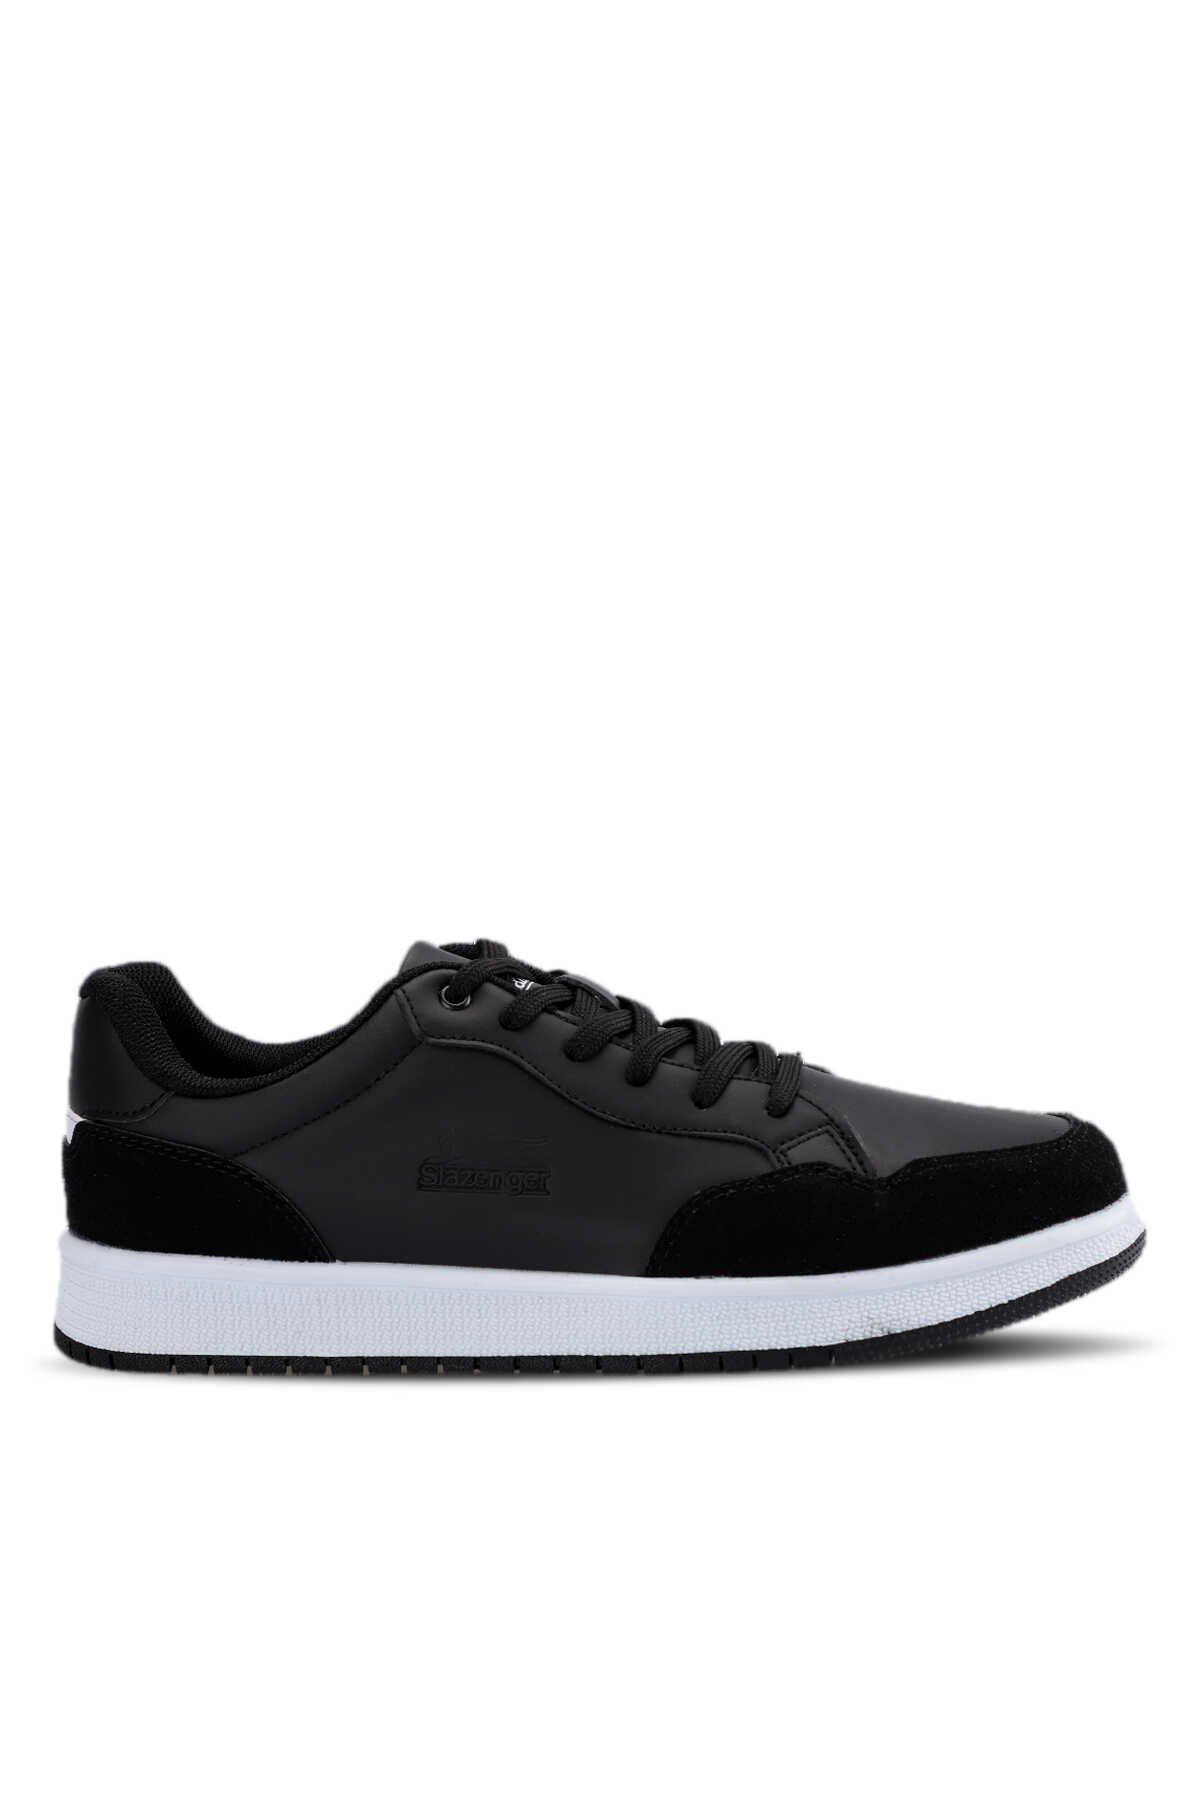 Slazenger - Slazenger PAIR I Sneaker Erkek Ayakkabı Siyah / Beyaz